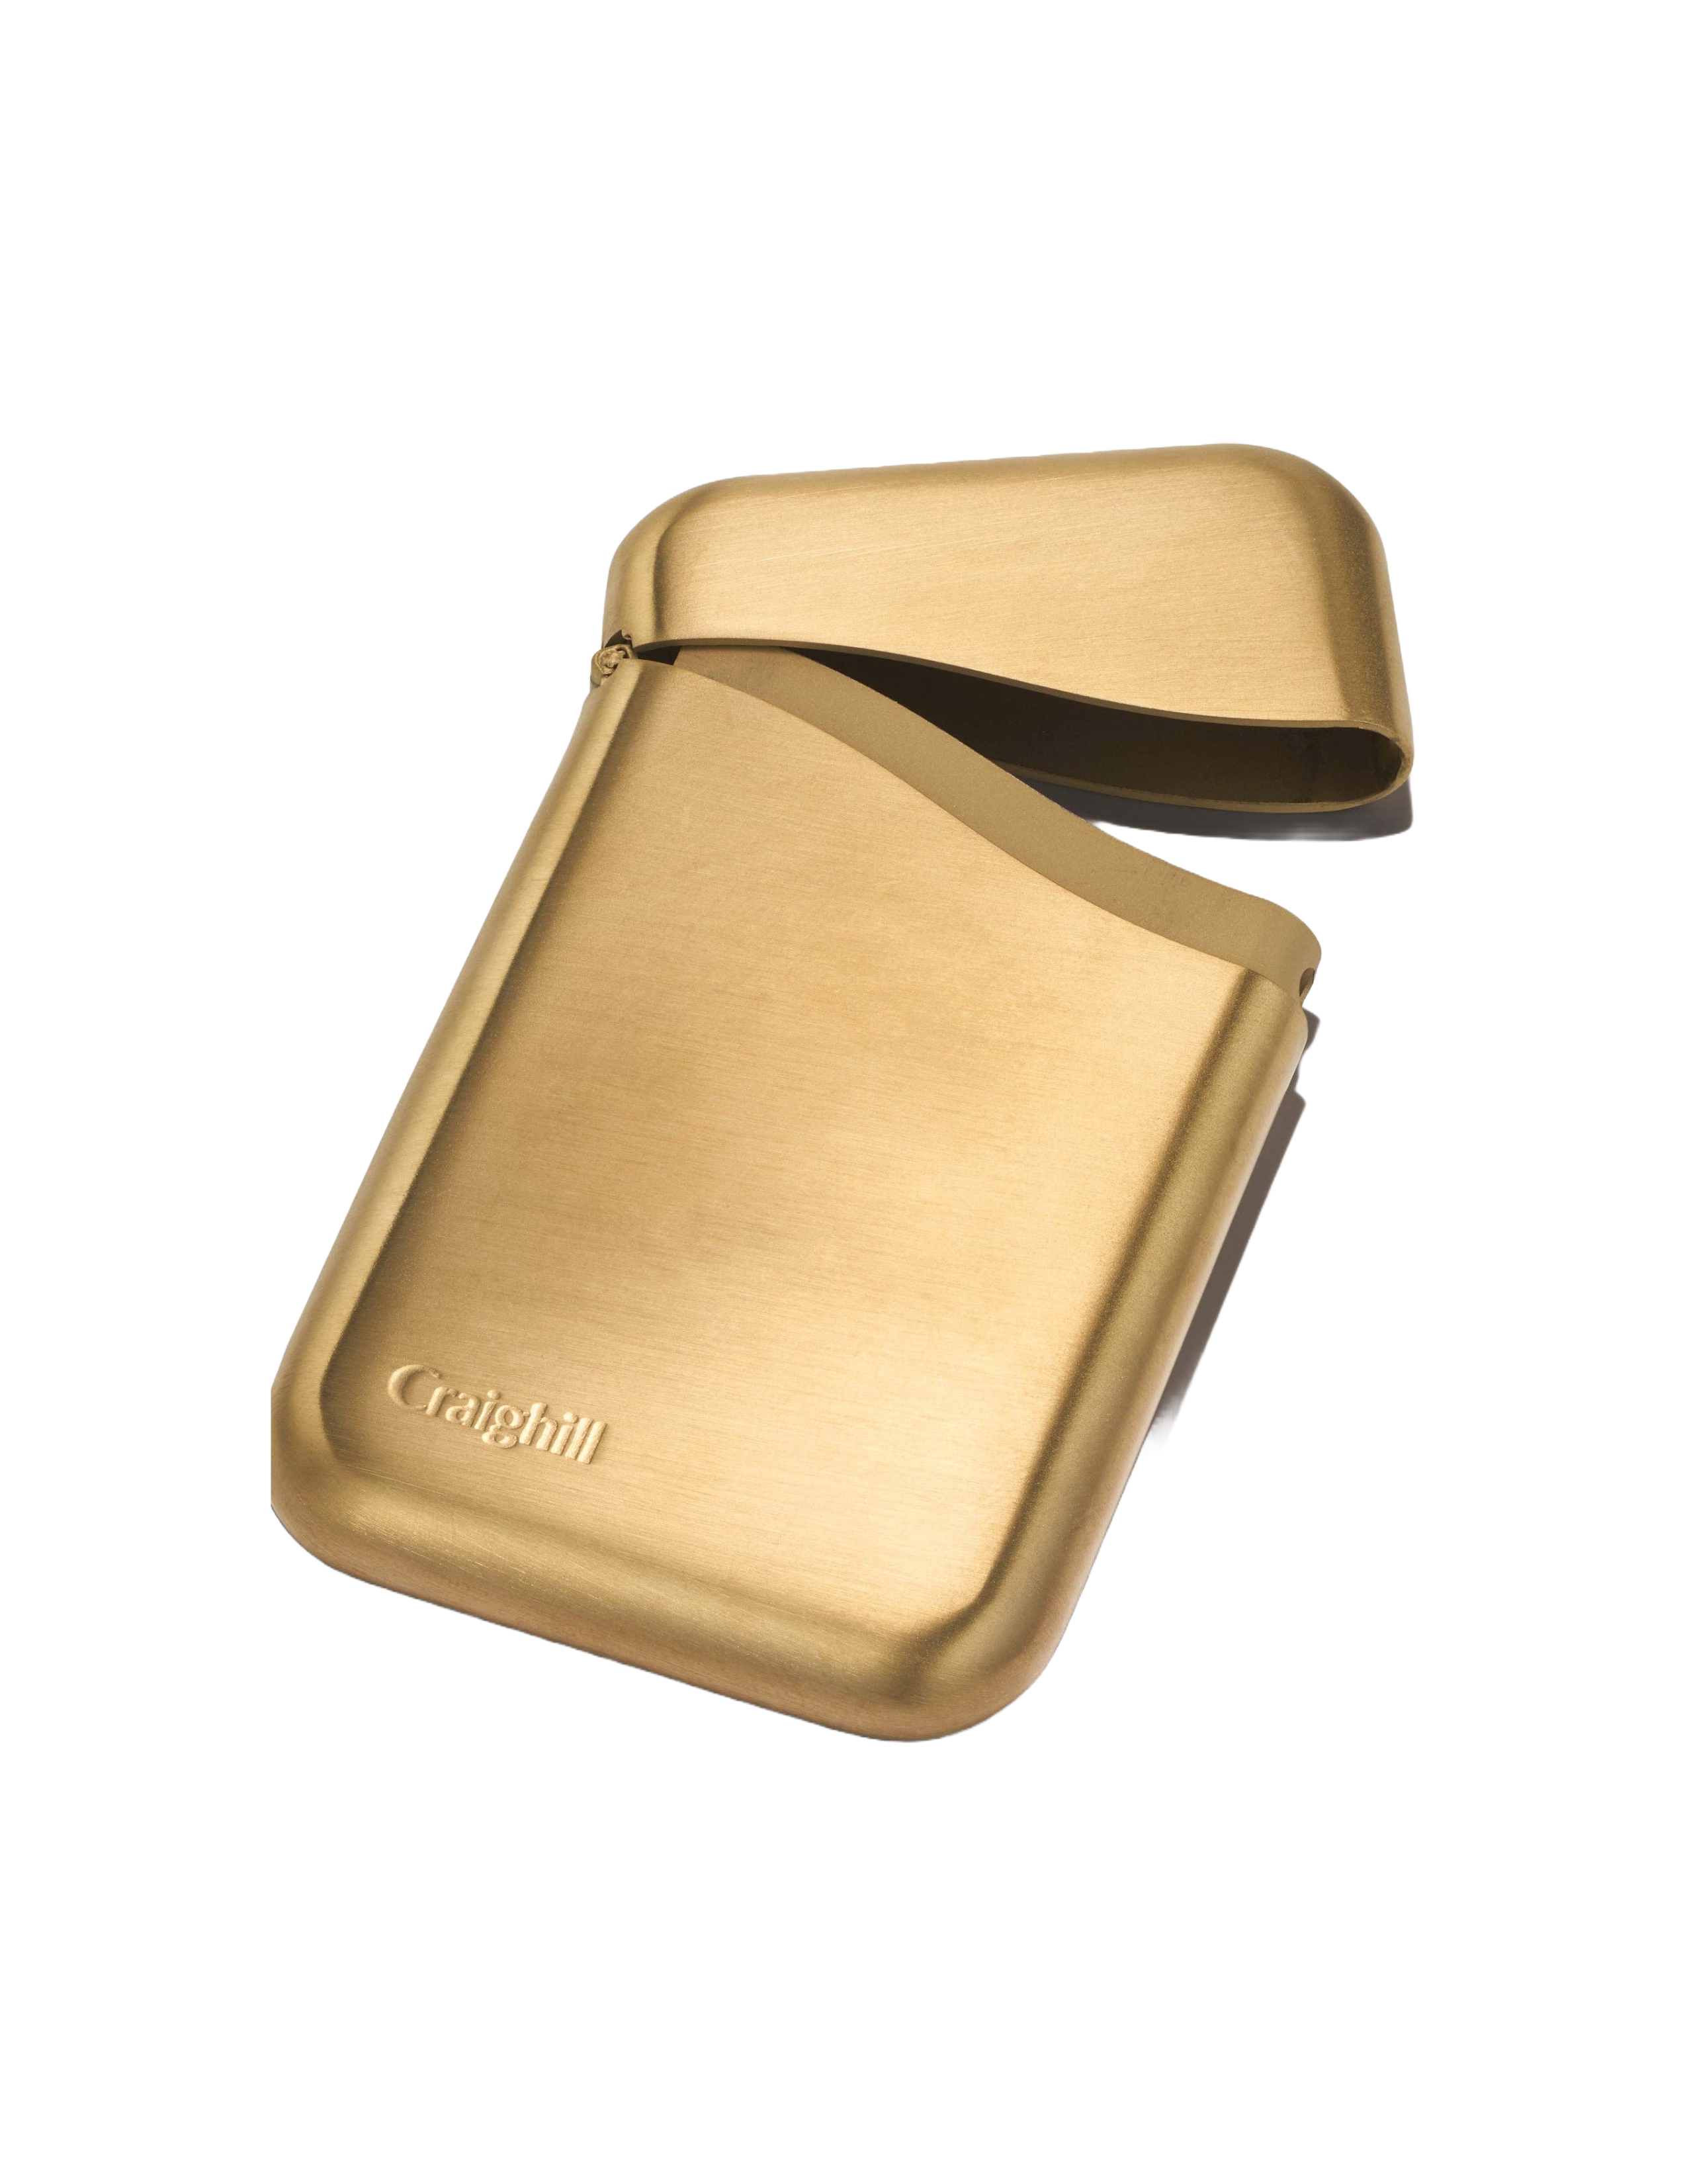 Summit Card Case: Vapor Brass